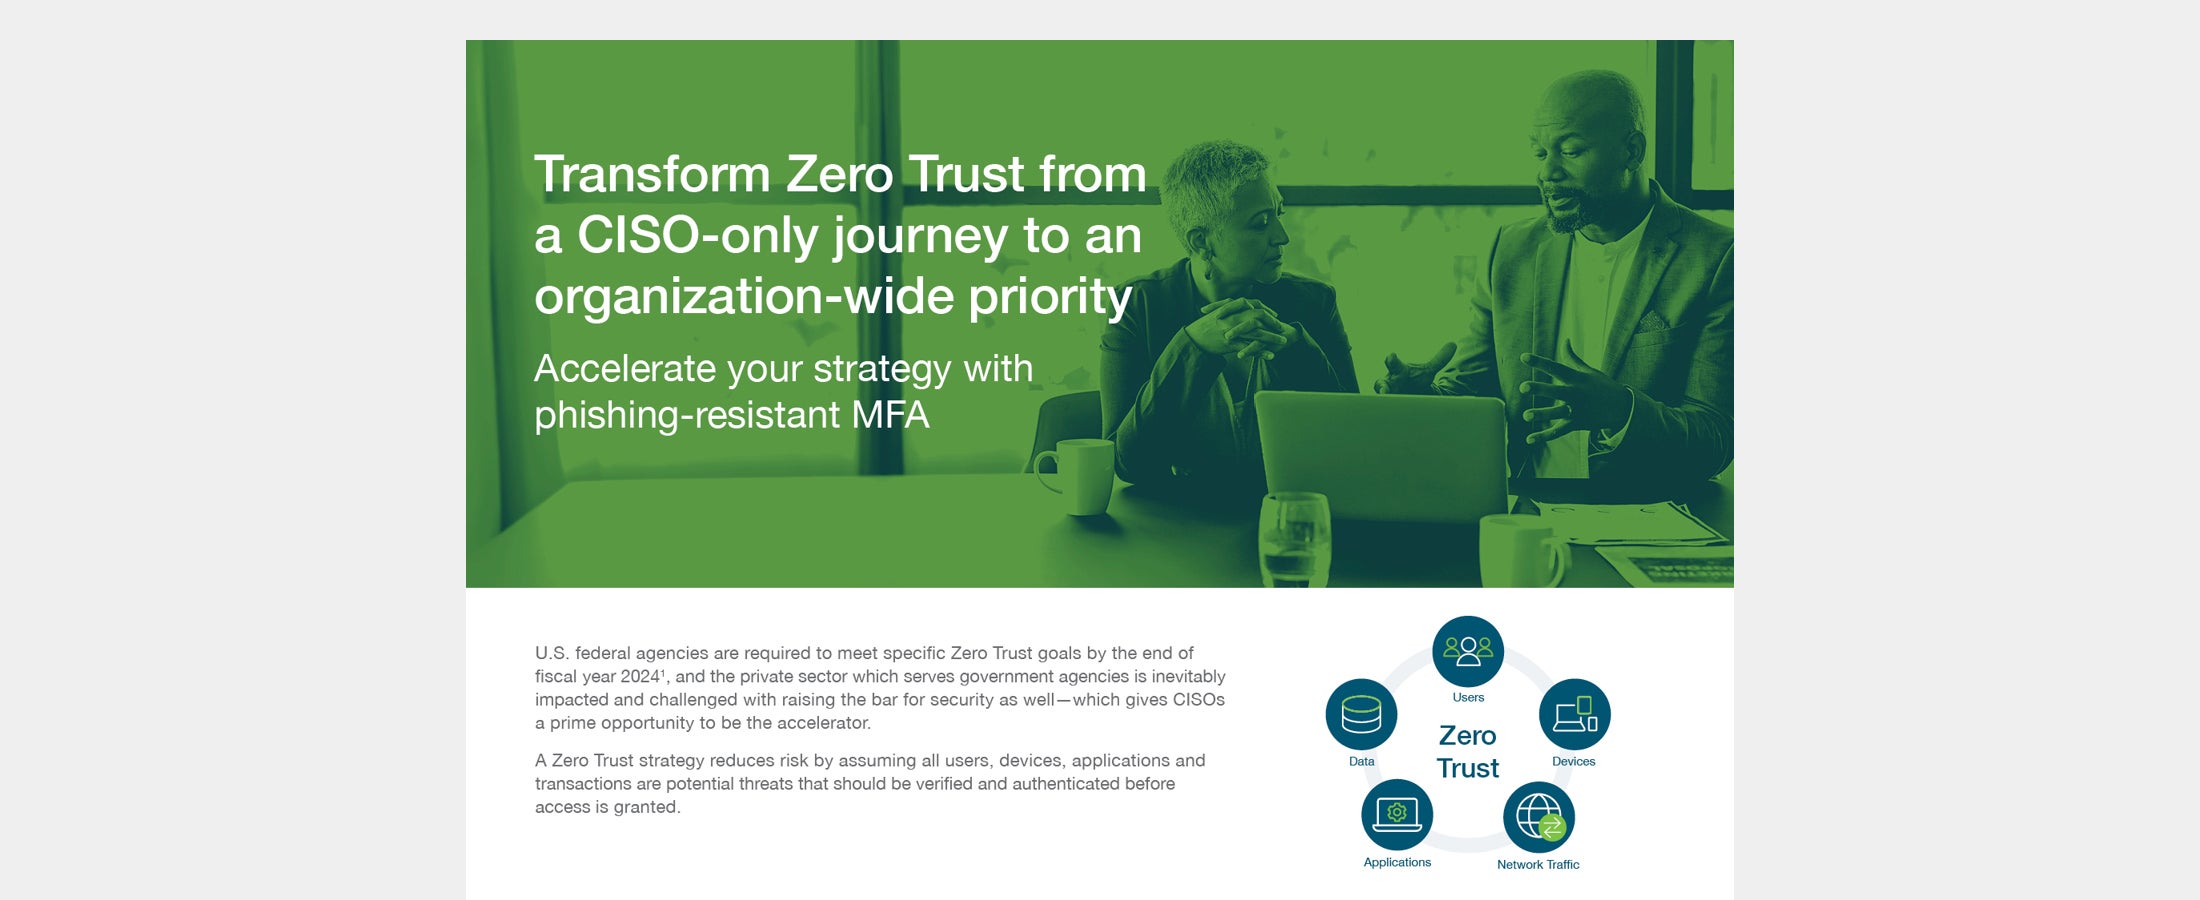 Transform Zero Trust featured image